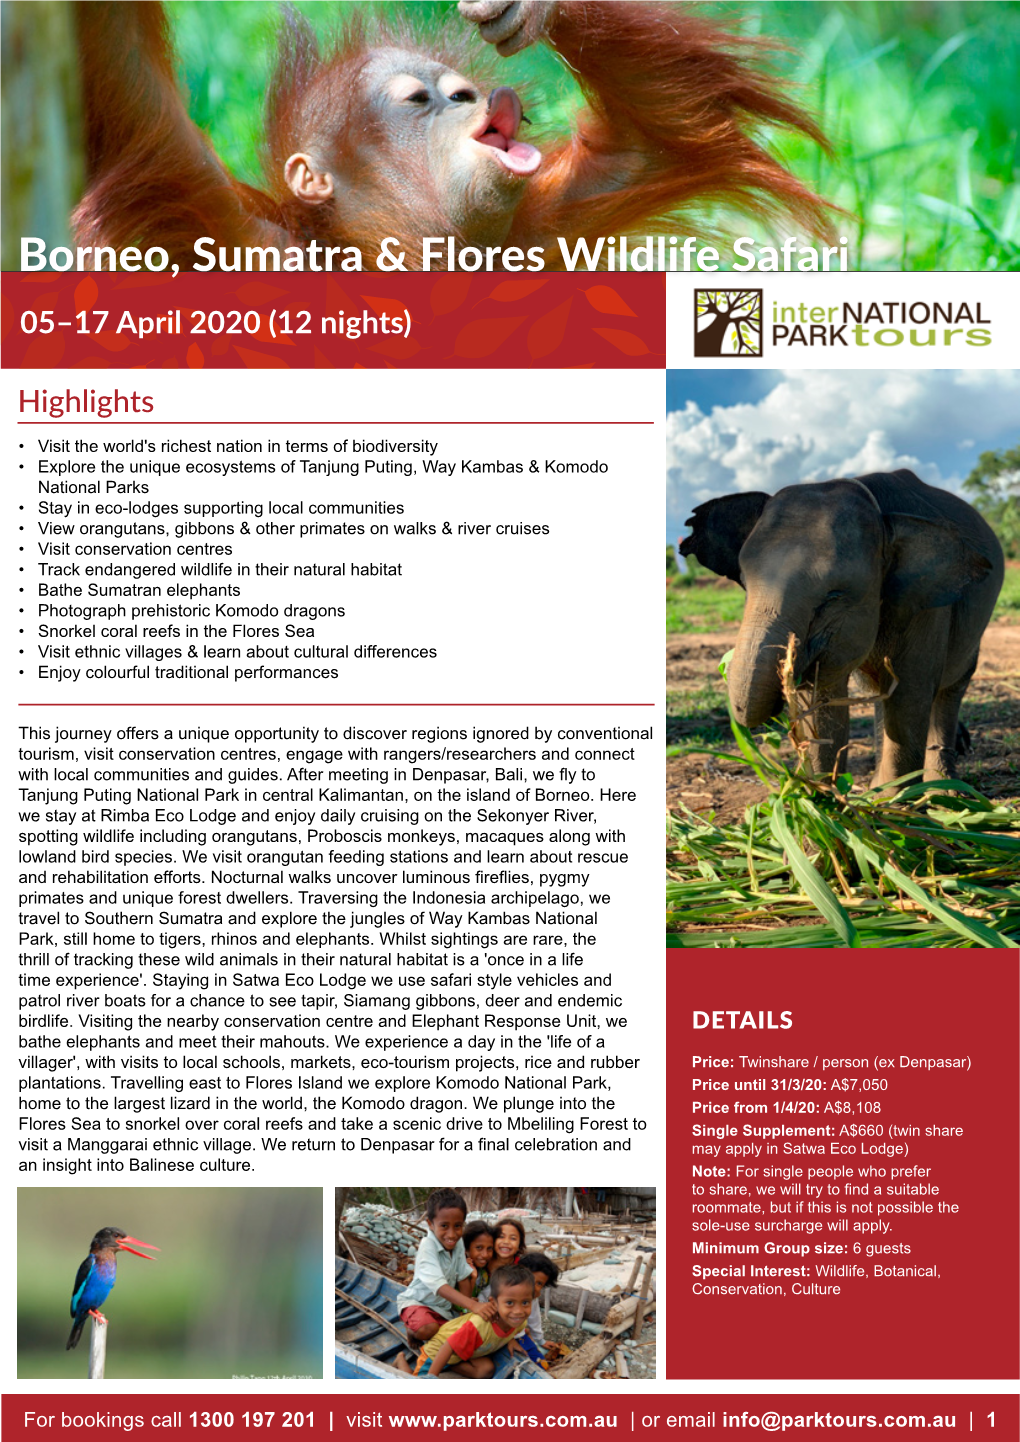 Borneo, Sumatra & Flores Wildlife Safari